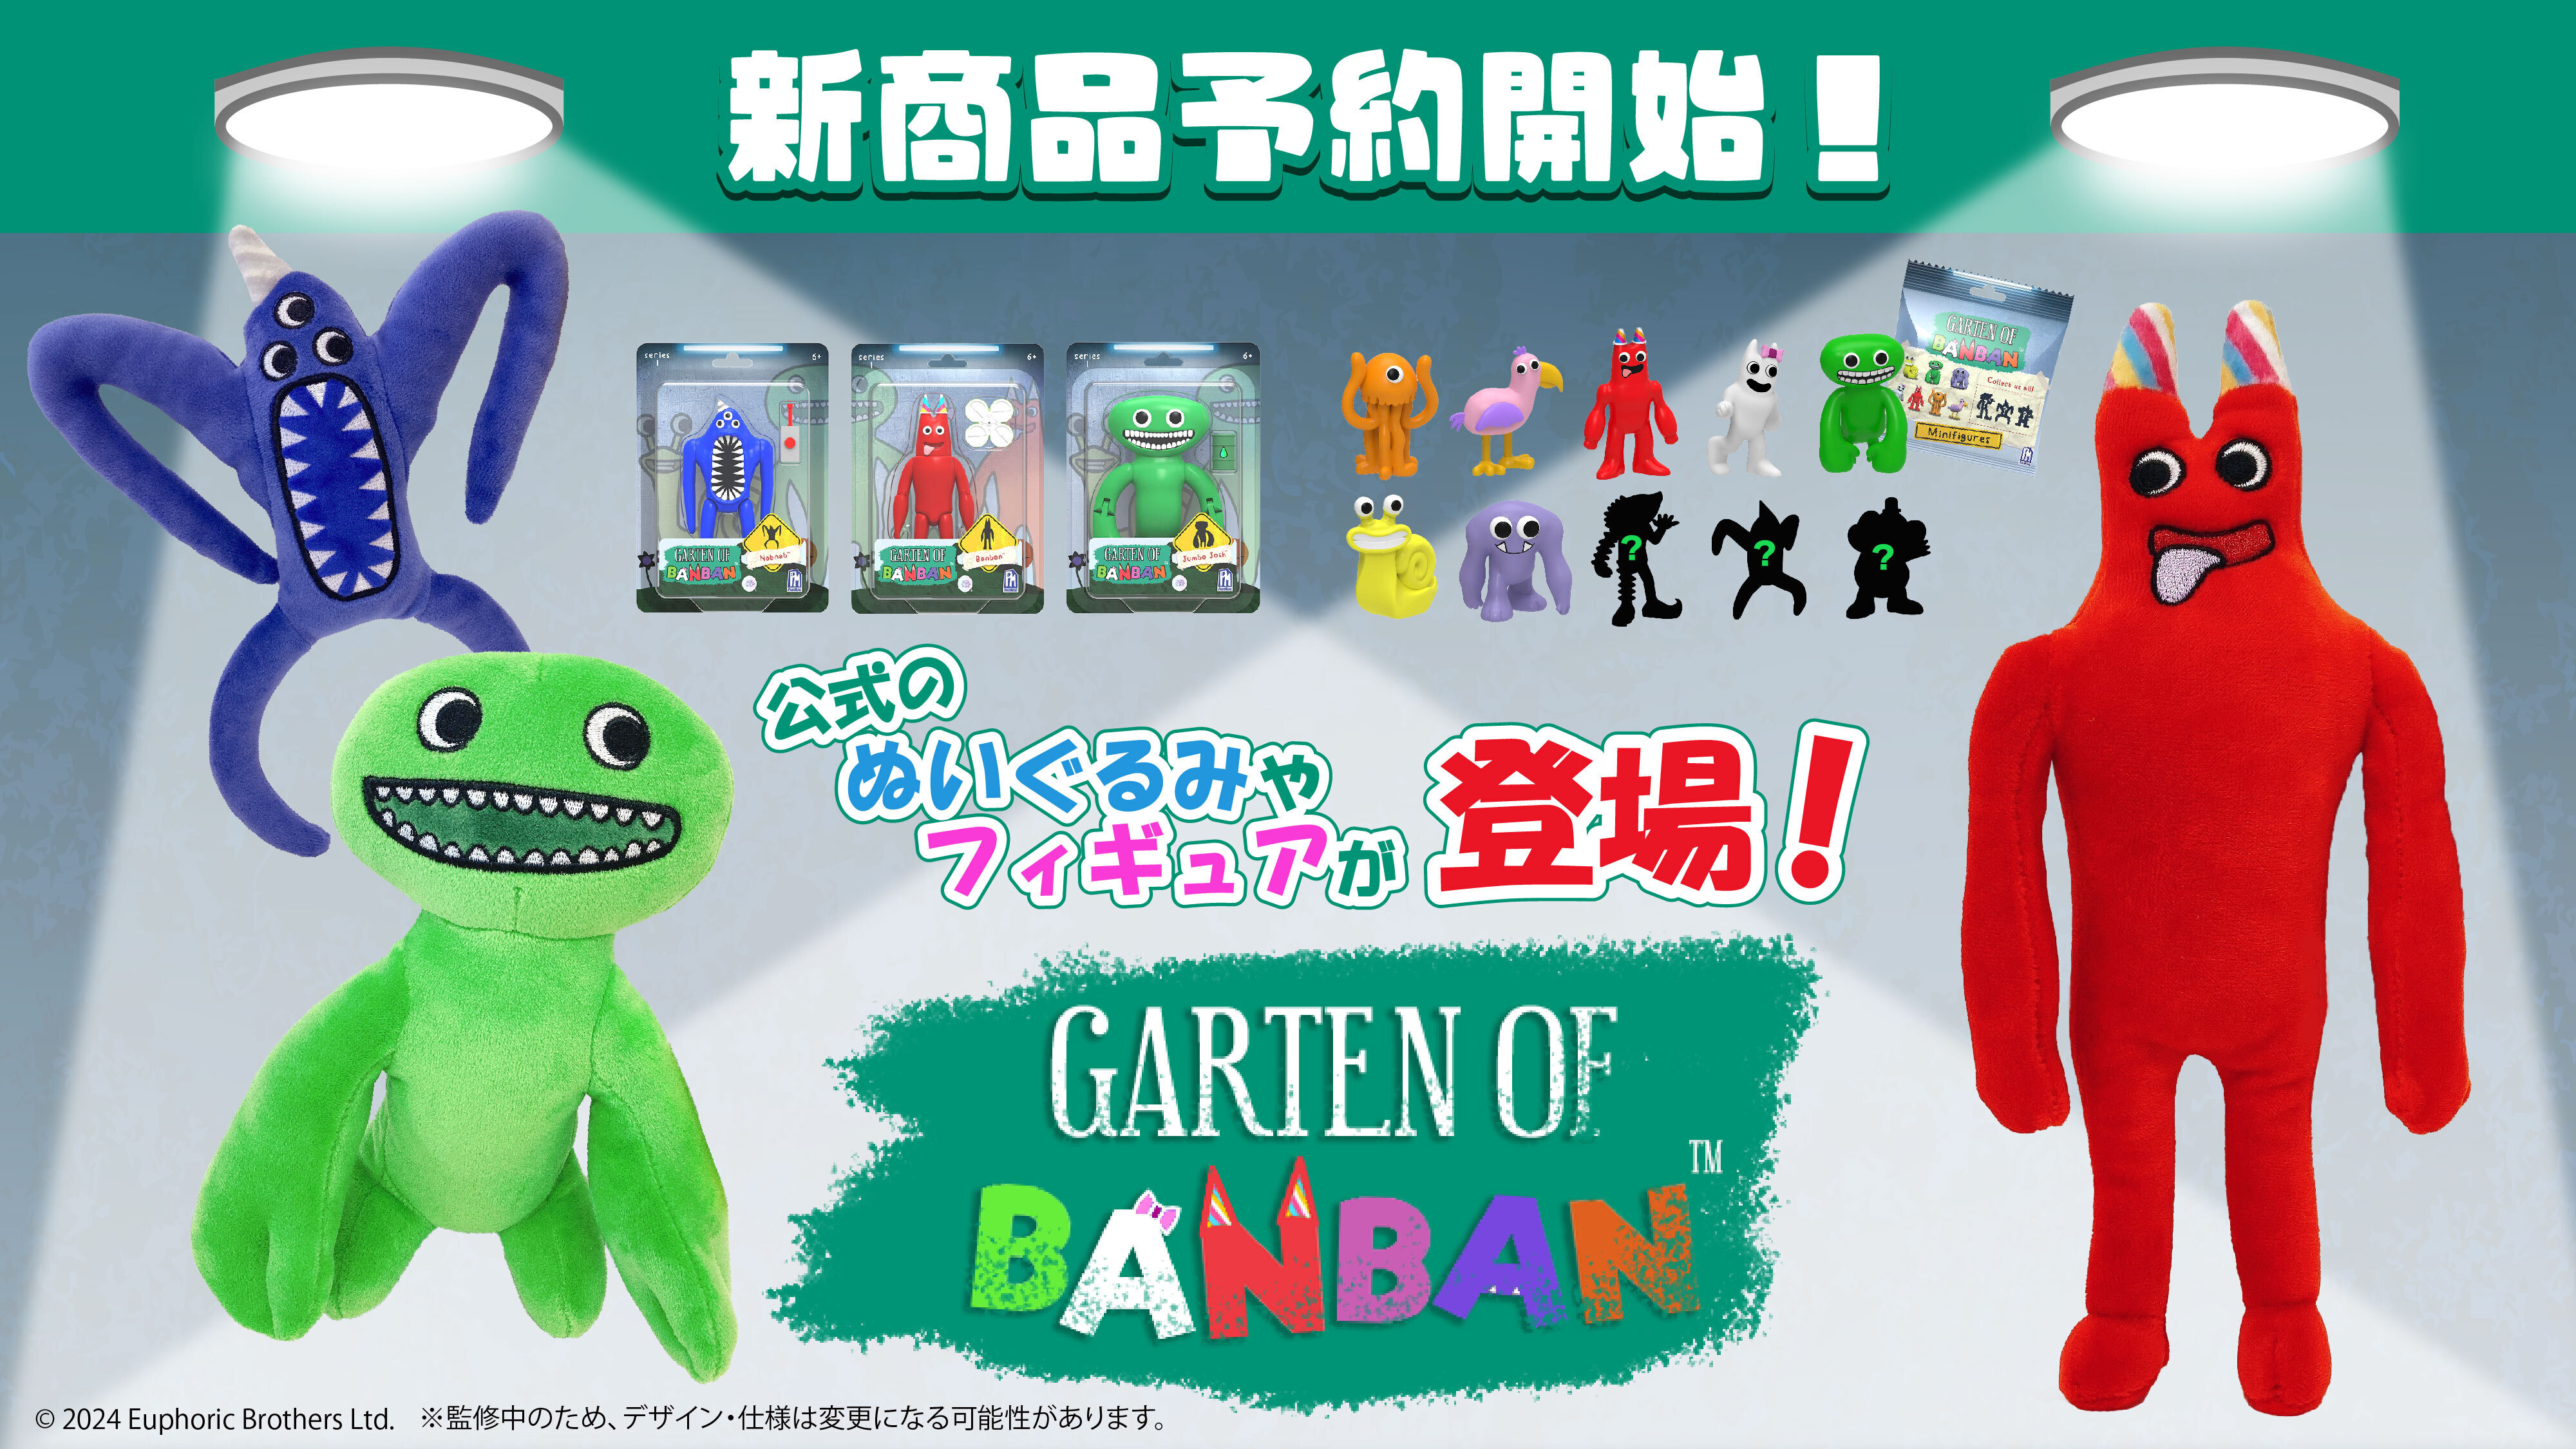 大人気サバイバルホラーゲーム「Garten of Banban」より
アクションフィギュアやぬいぐるみ他、
公式新商品3種が3月中旬より発売決定！